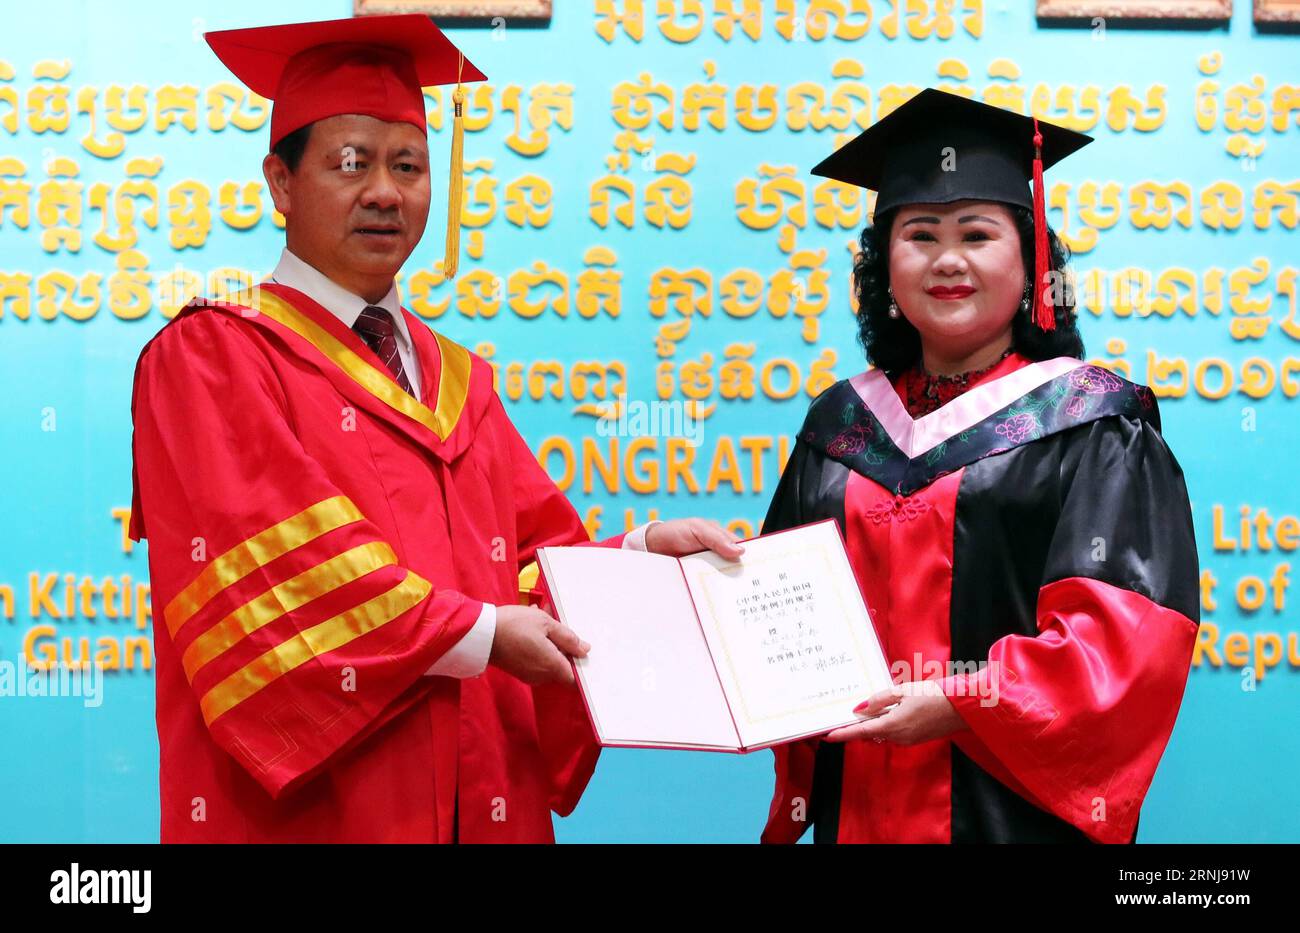 (170109) -- PHNOM PENH, le 9 janvier 2017 -- l'épouse du Premier ministre cambodgien Samdech Techo Hun Sen, Bun Rany (à droite), reçoit un doctorat honorifique en littérature de Xie Shangguo, président de l'Université chinoise des nationalités du Guangxi à Phnom Penh, Cambodge, le 9 janvier 2017. Bun Rany a reçu le diplôme pour sa contribution à la promotion des échanges bilatéraux. (lrz) CAMBODGE-PHNOM PENH-PM S ÉPOUSE-DOCTORAT HONORIFIQUE DEGRÉ-UNIVERSITÉ CHINOISE Sovannara PUBLICATIONxNOTxINxCHN Phnom Penh Jan 9 2017 Premier ministres cambodgiens Samdech Techo HUN Sen S épouse Bun Rany r reçoit un doctorat honorifique D. Banque D'Images